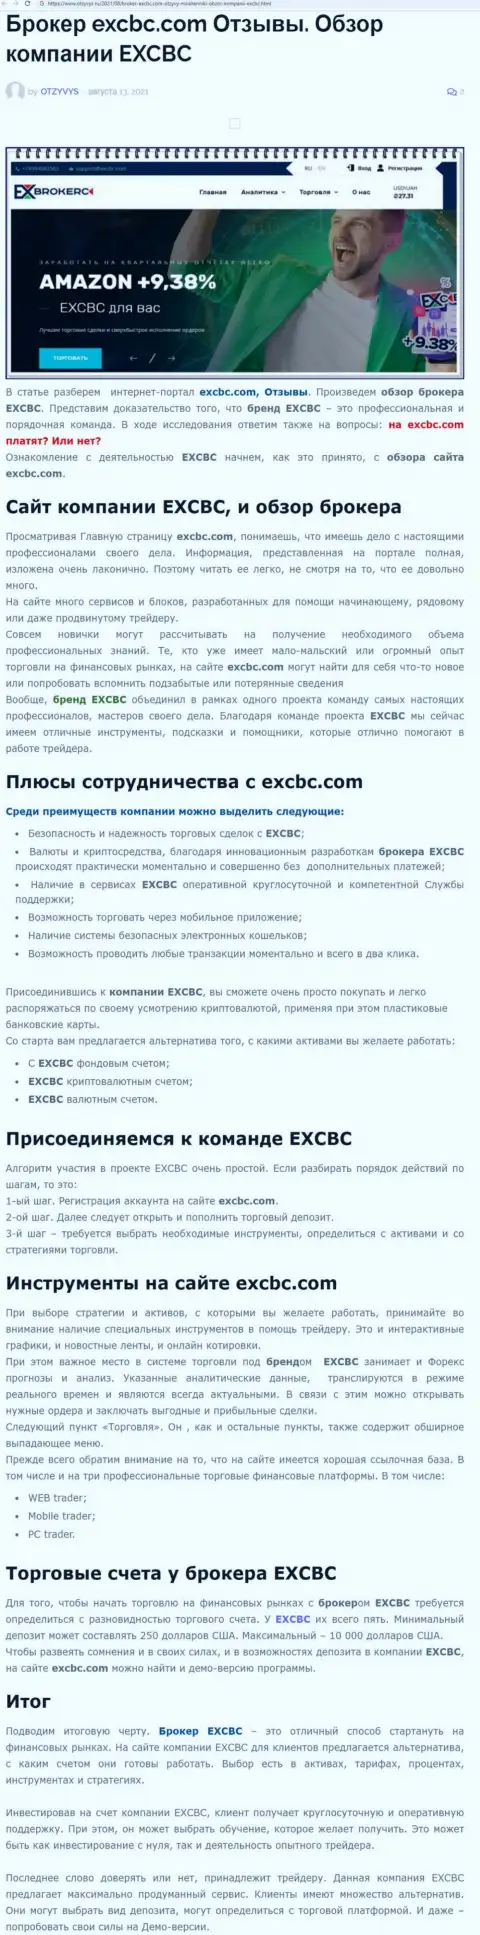 ЕИксБрокерс - это ответственная и надёжная ФОРЕКС брокерская компания, об этом можно узнать из публикации на портале otzyvys ru